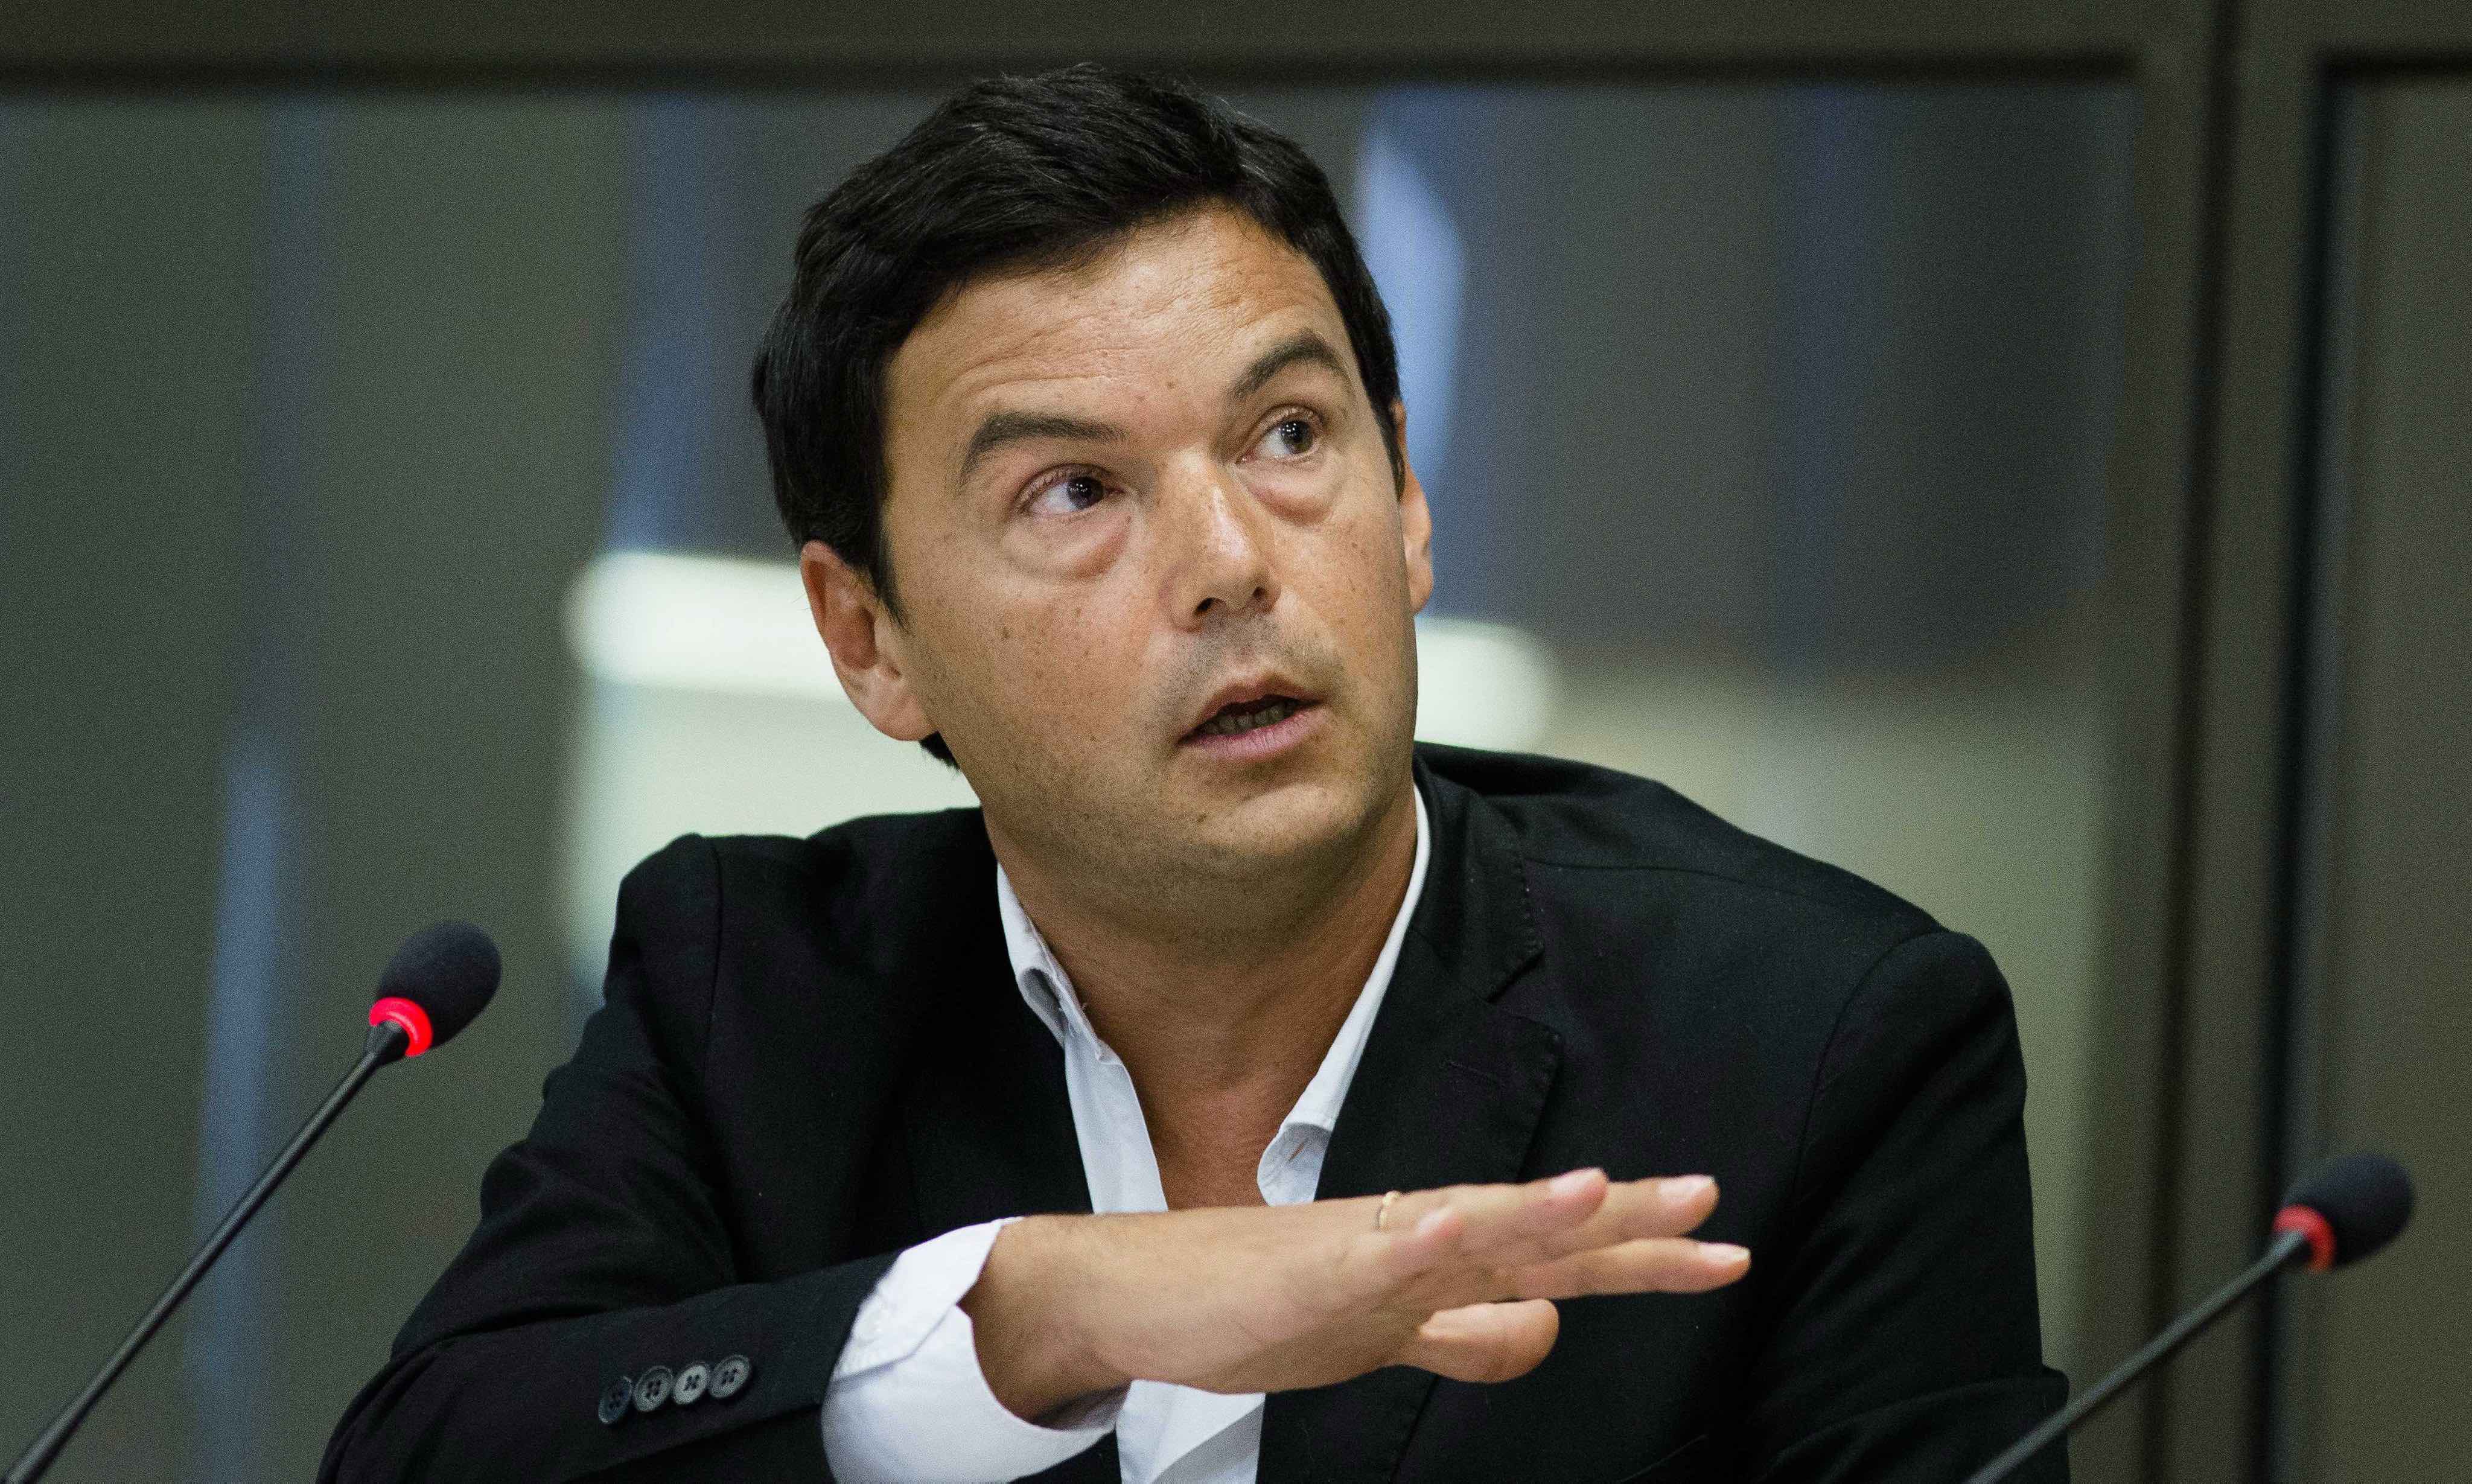 20210210-image-dpa-mb-Thomas Piketty